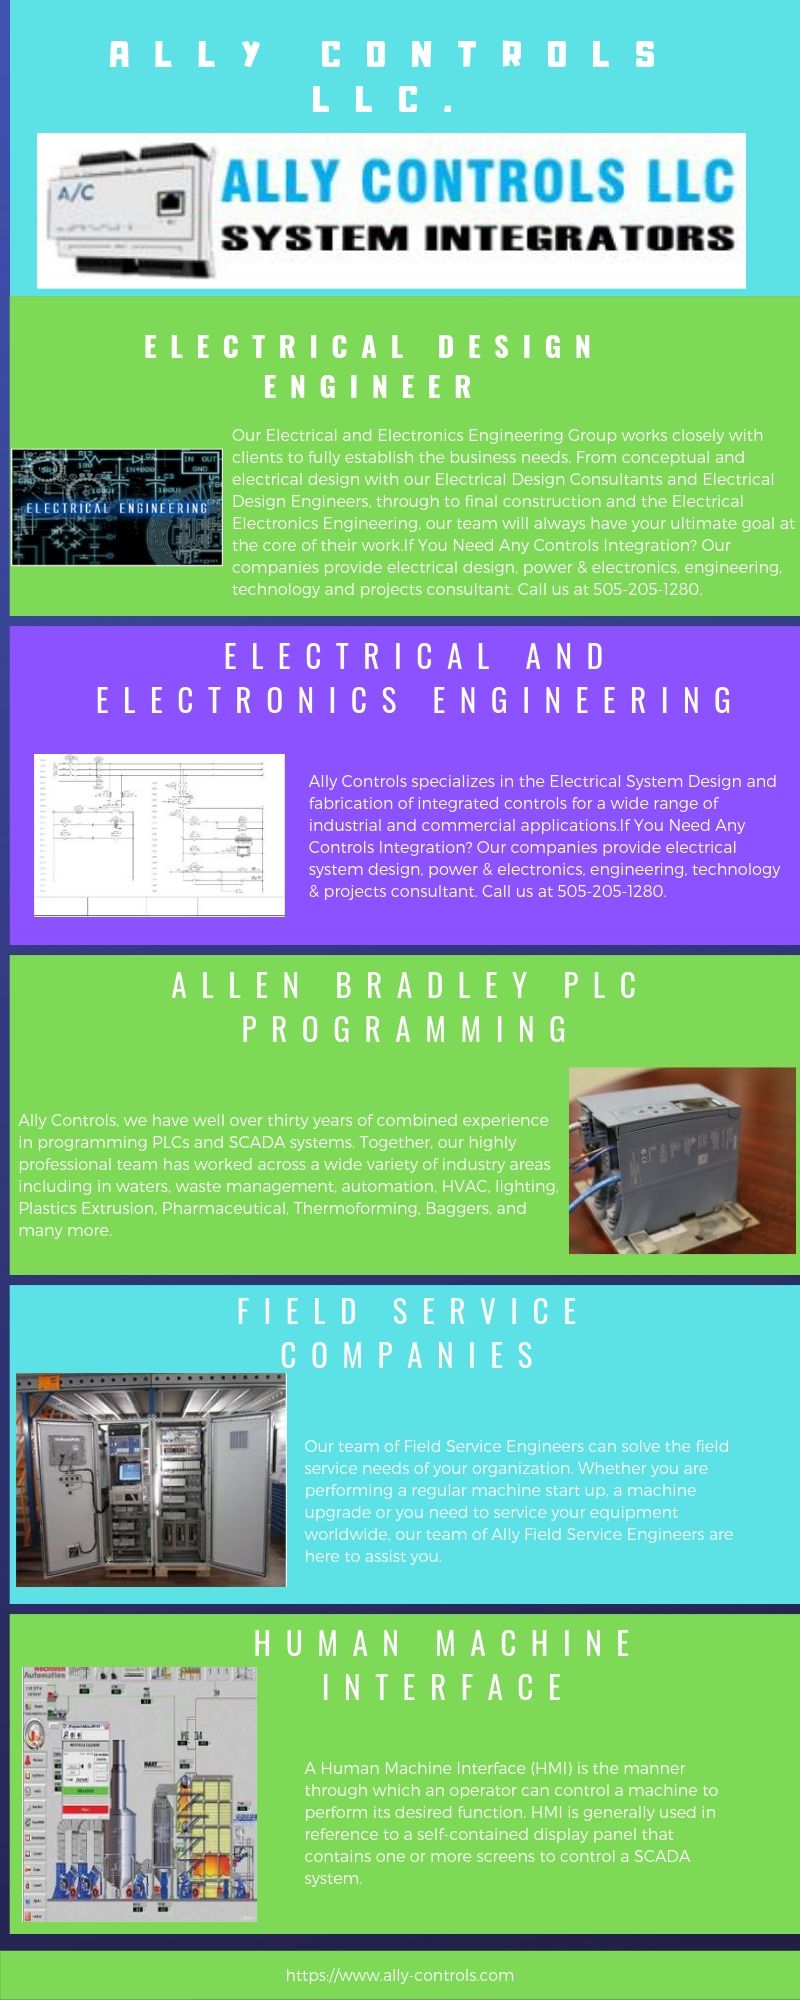 Ally Controls LLC.Electrical Design Engineer.jpg  by AllyControls